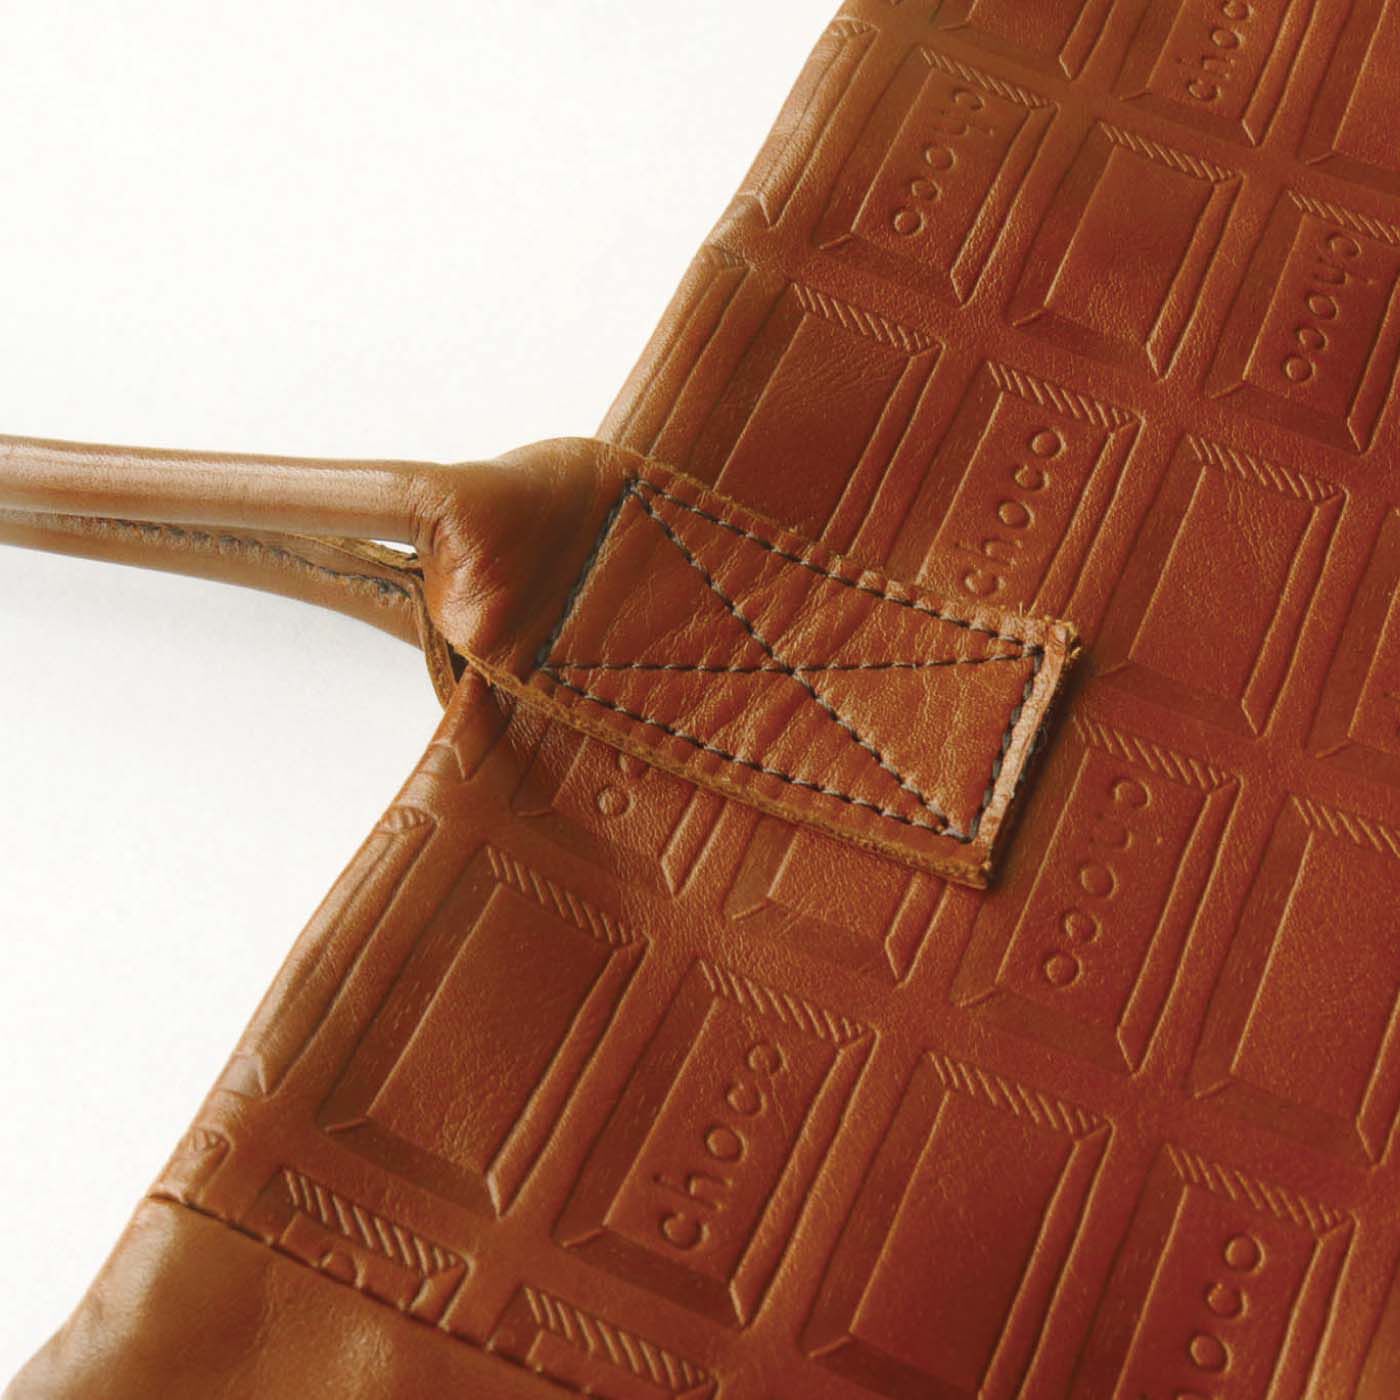 ＆Stories|チョコレートバイヤーと作った　職人本革のトートバッグ〈ブラウン〉